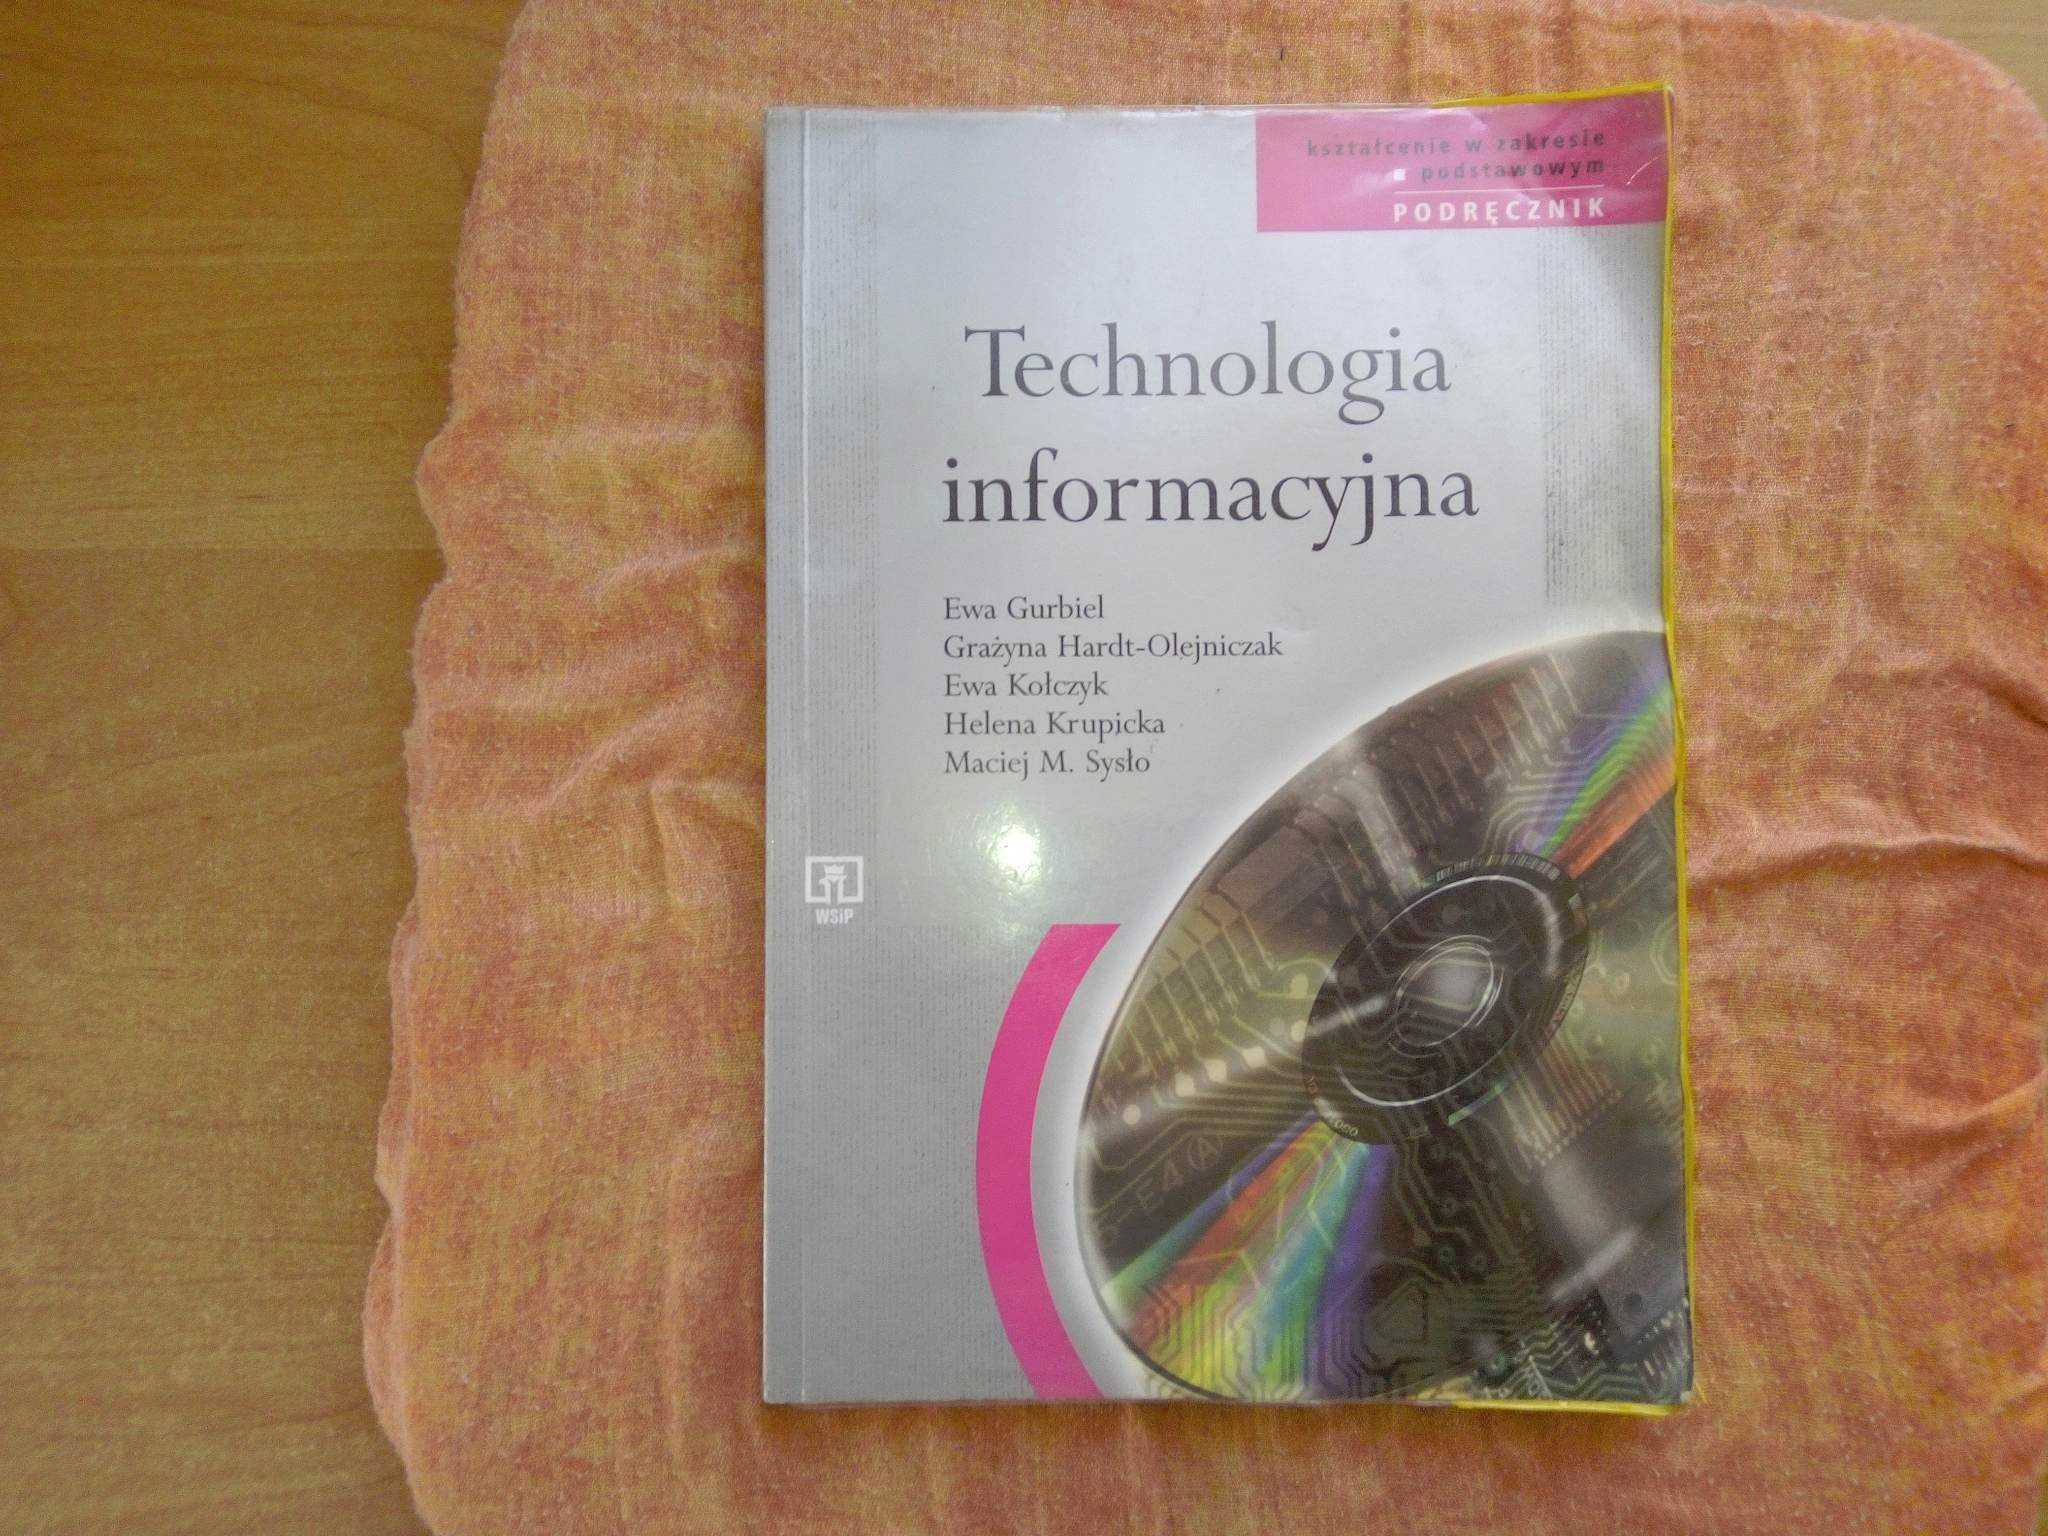 Technologia informacyjna Informatyka Płyta CD Gurbiel Kołczyk WSiP